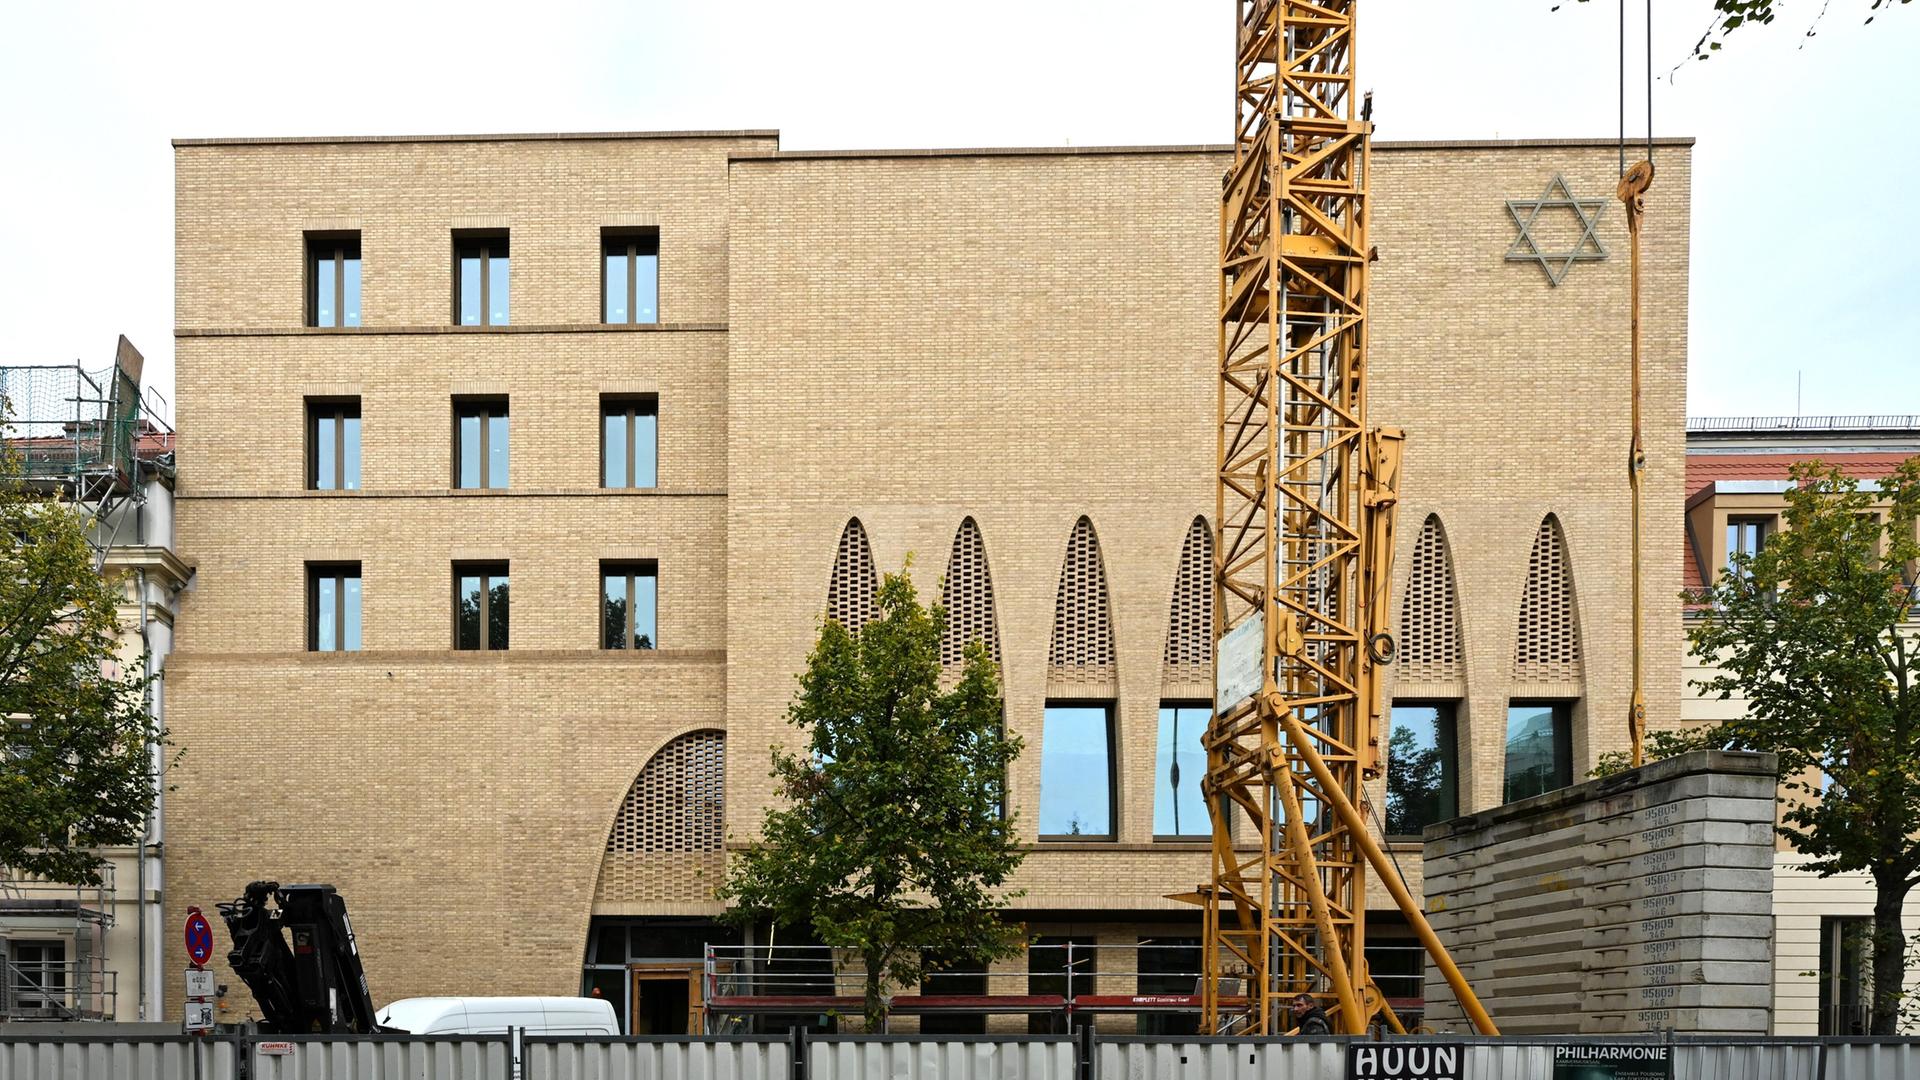 Aussenansicht der neuen jüdischen Synagoge in Potsdam, mit einem Baustellenkran vor der Fassade. Die Synagoge wird nach Plänen des Architekten Jost Haberland gebaut und soll 2024 eröffnet werden.